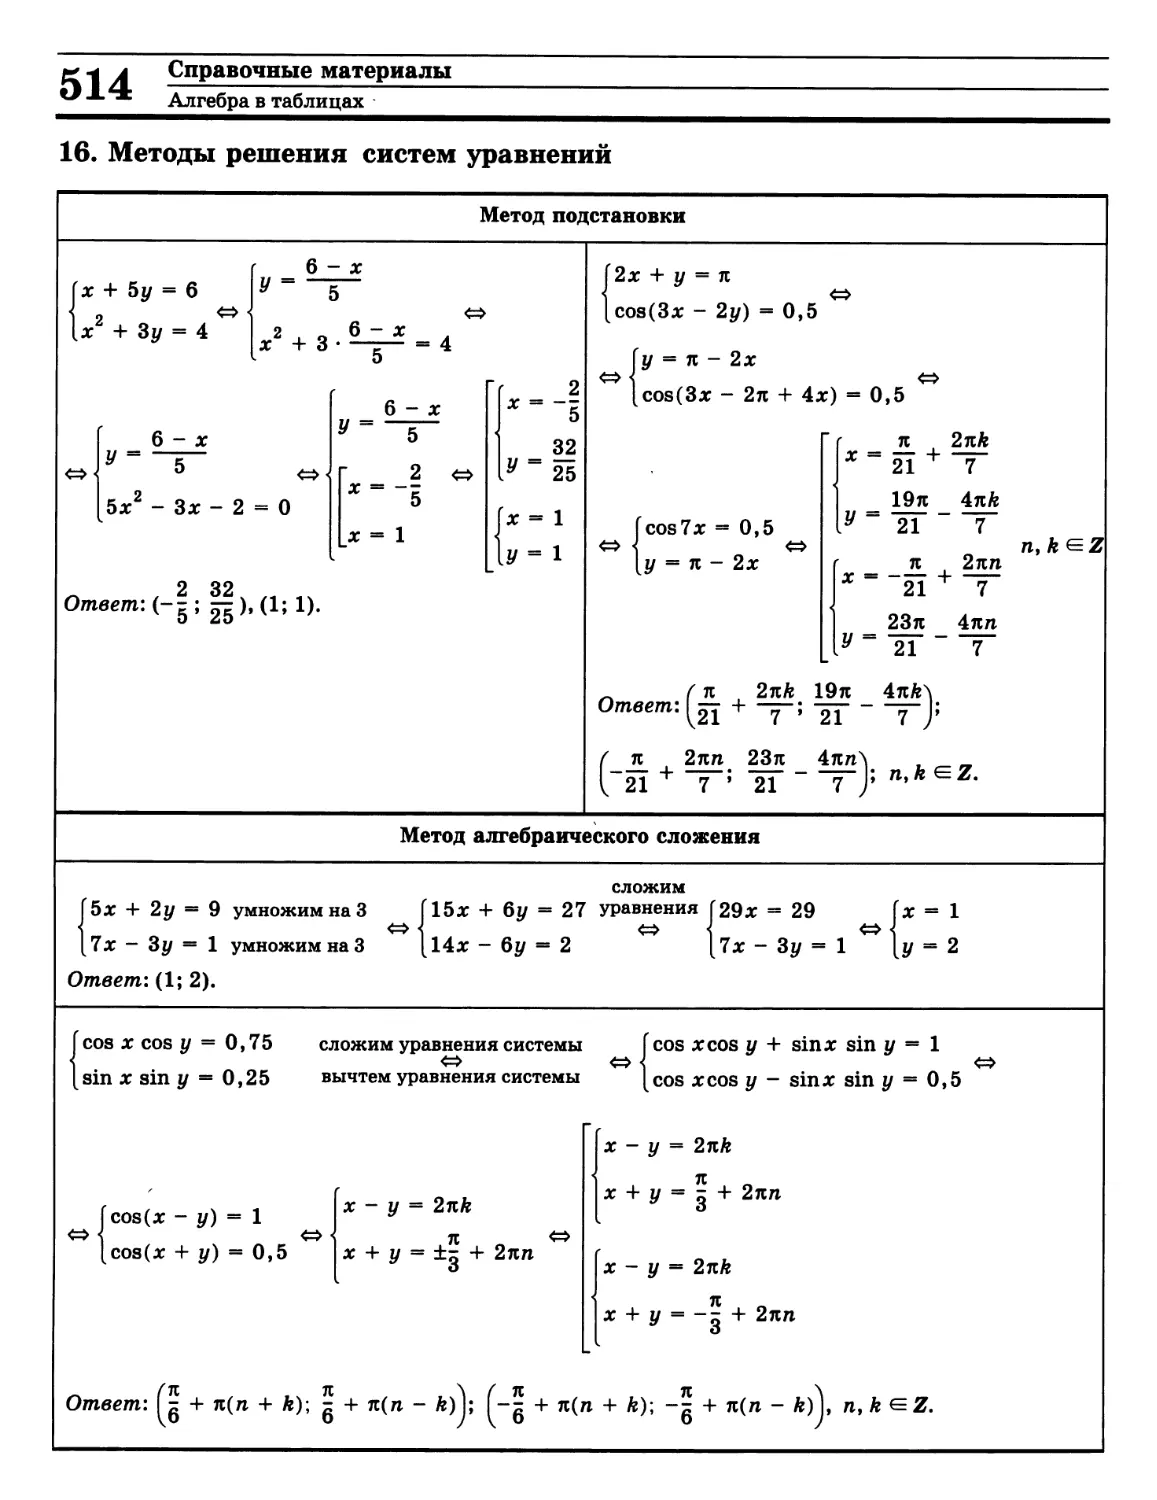 Методы решения систем уравнений
>>>
>>>